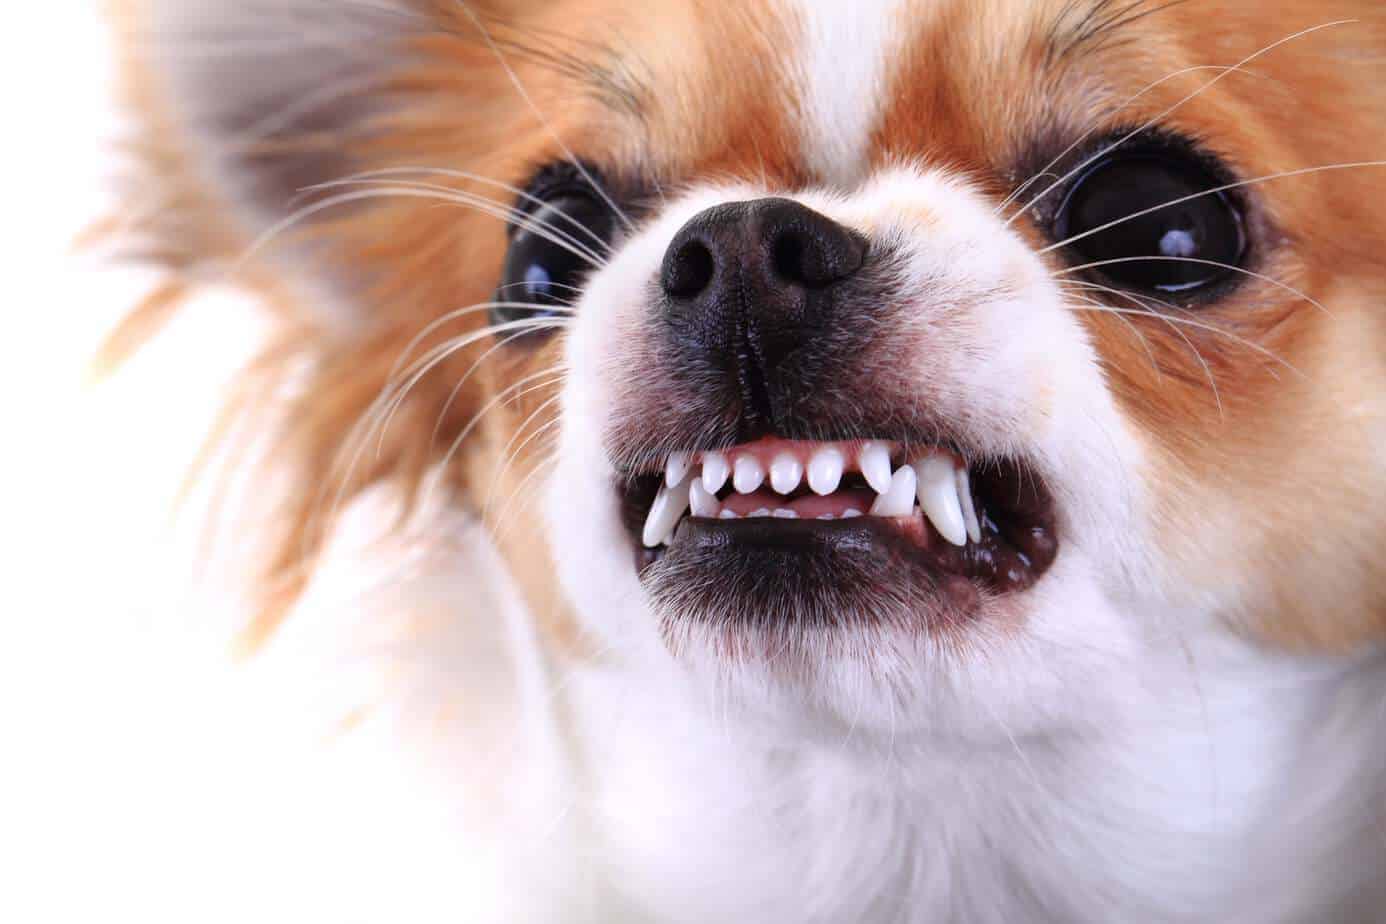 Il chihuahua aggressivo mostra i denti. Lavora per ridurre l'aggressività del cane con l'addestramento.